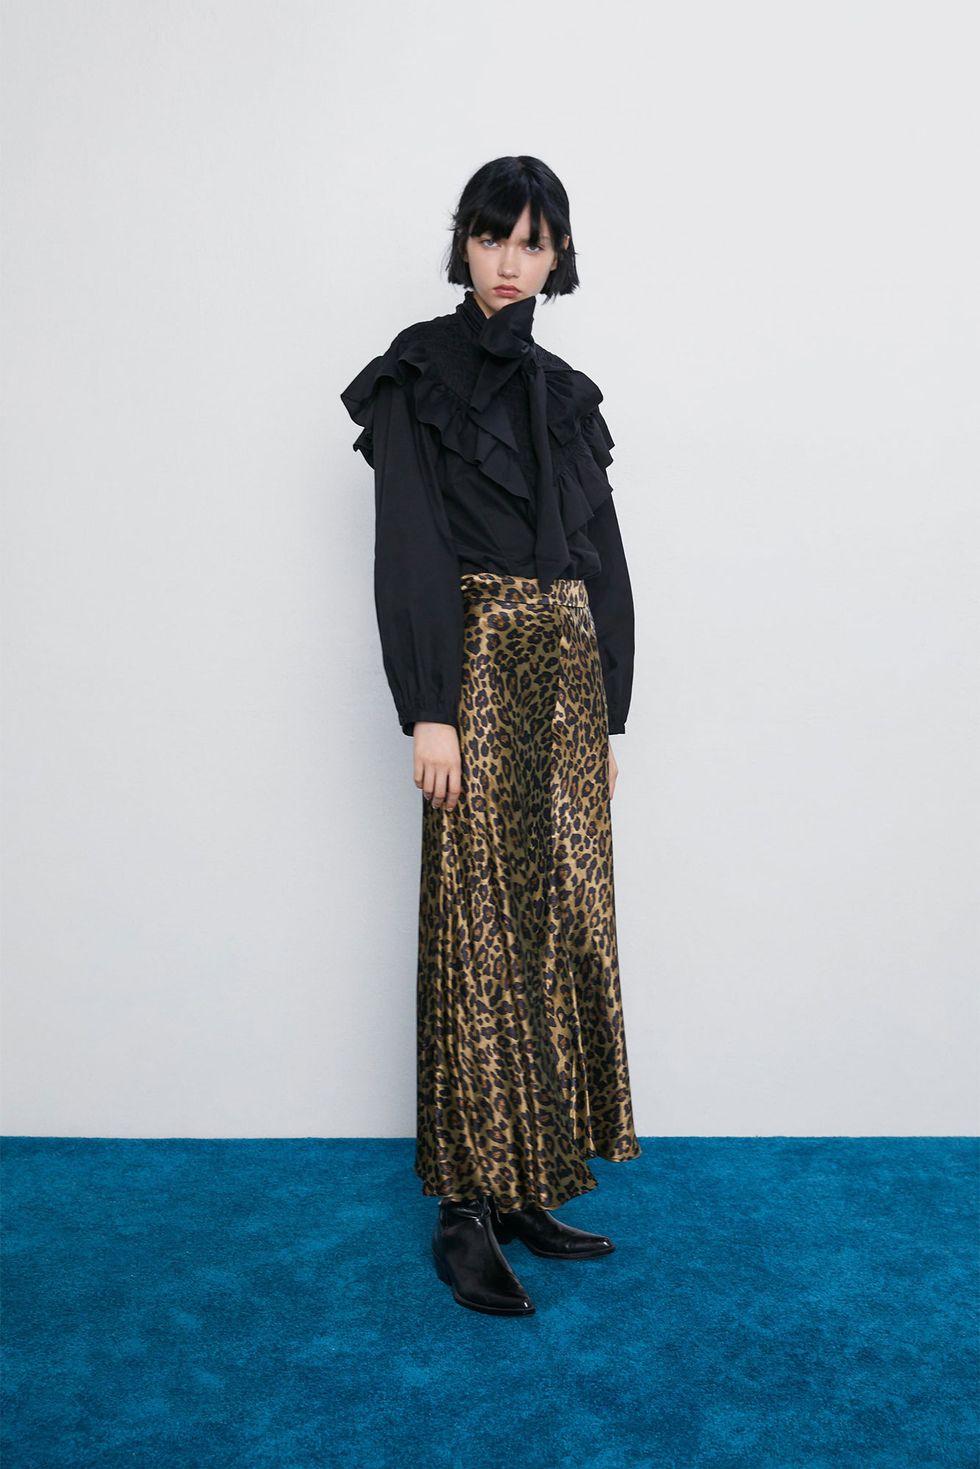 La falda larga con estampado leopardo de Zara para arrasar